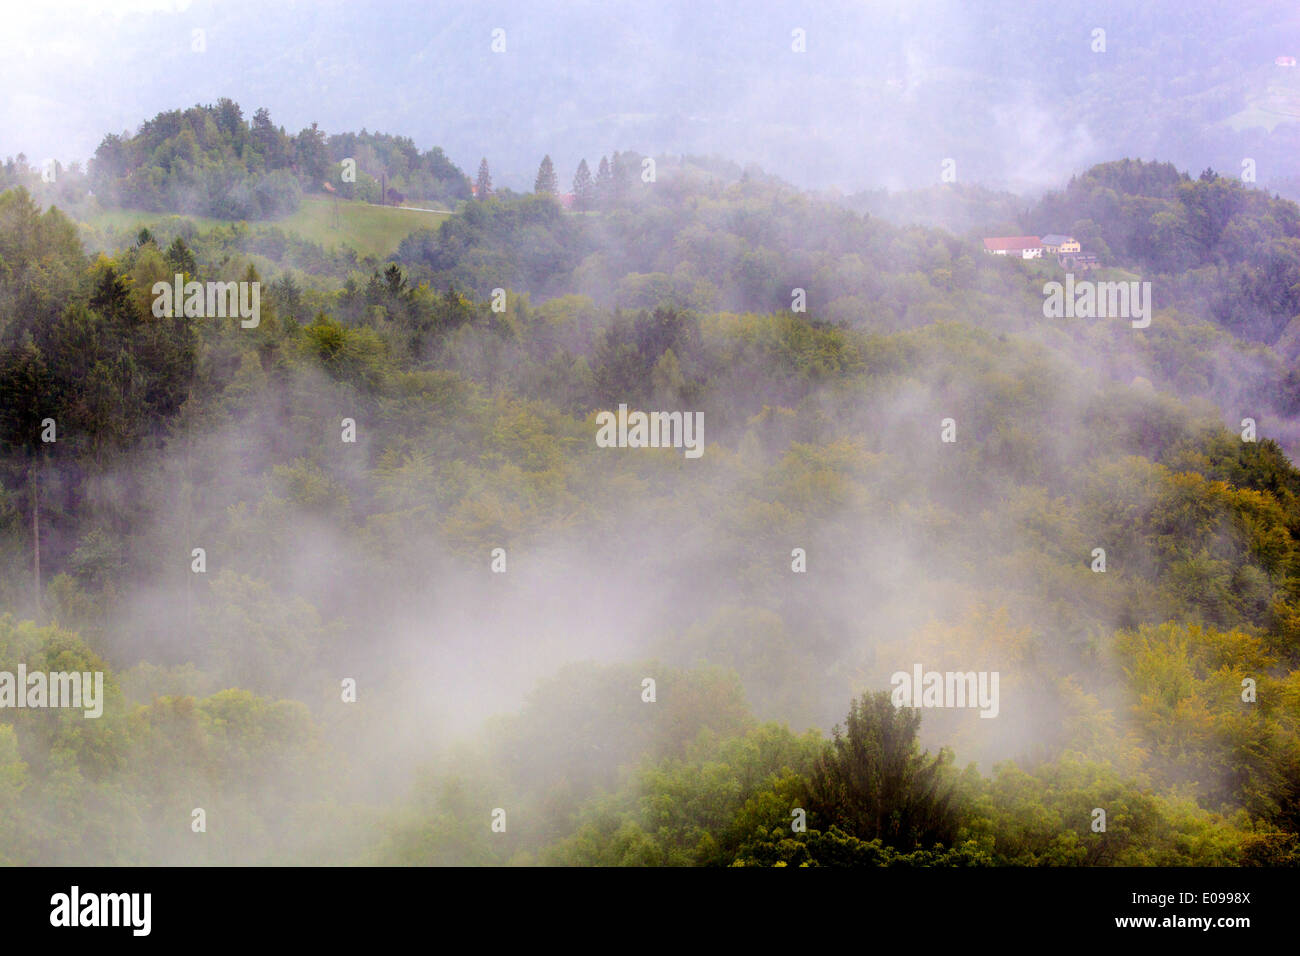 "Fog about mountain landscape in ""Styrian Tuscany"". Suedsteiermark", "Nebel ueber Berglandschaft in der ""steirischen Toskana" Stock Photo